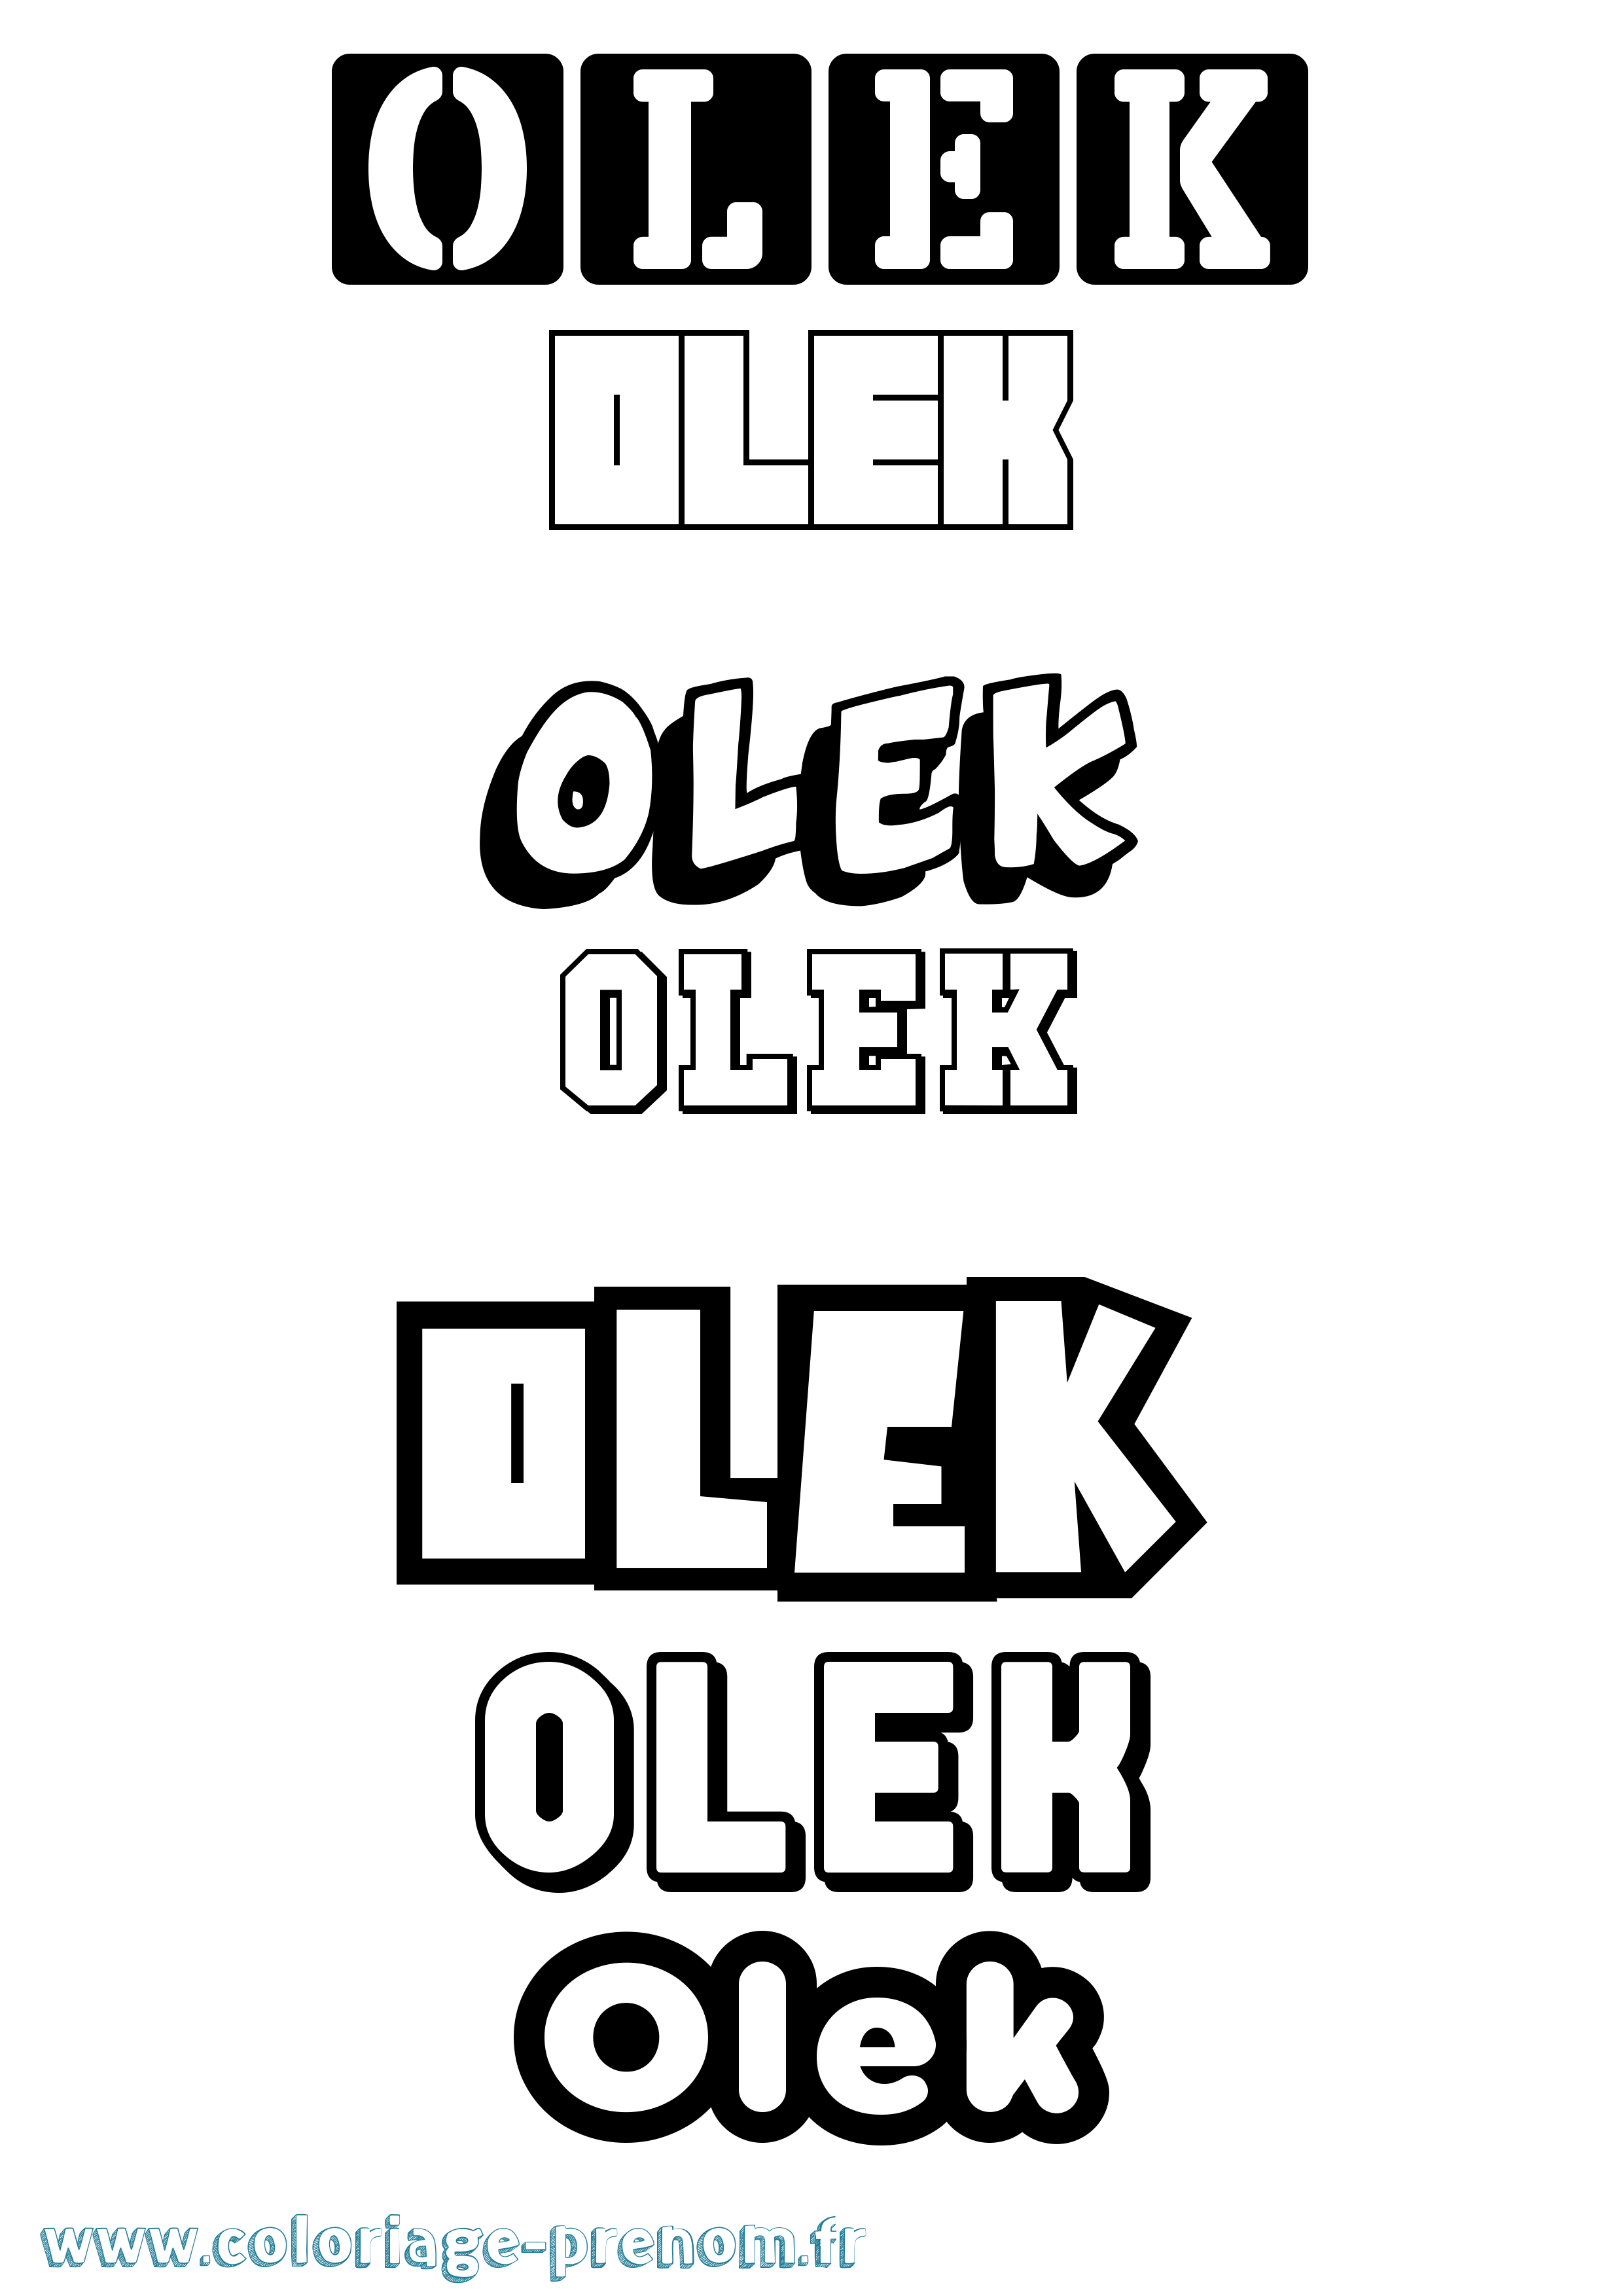 Coloriage prénom Olek Simple